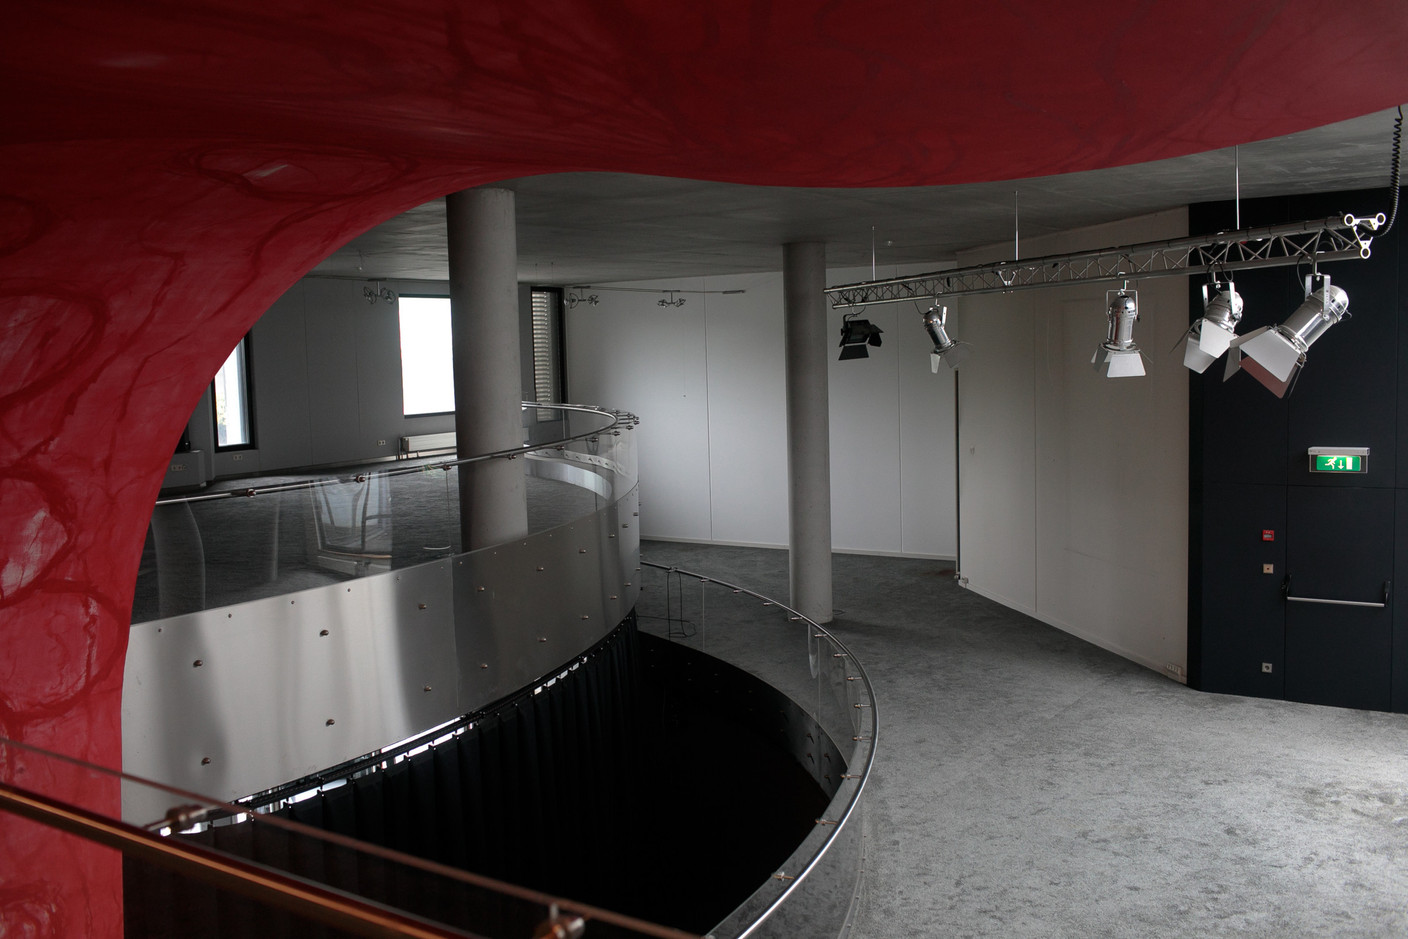 Vue des espaces de la Konschthal avant transformation. (Photo: Matic Zorman / Maison Moderne)